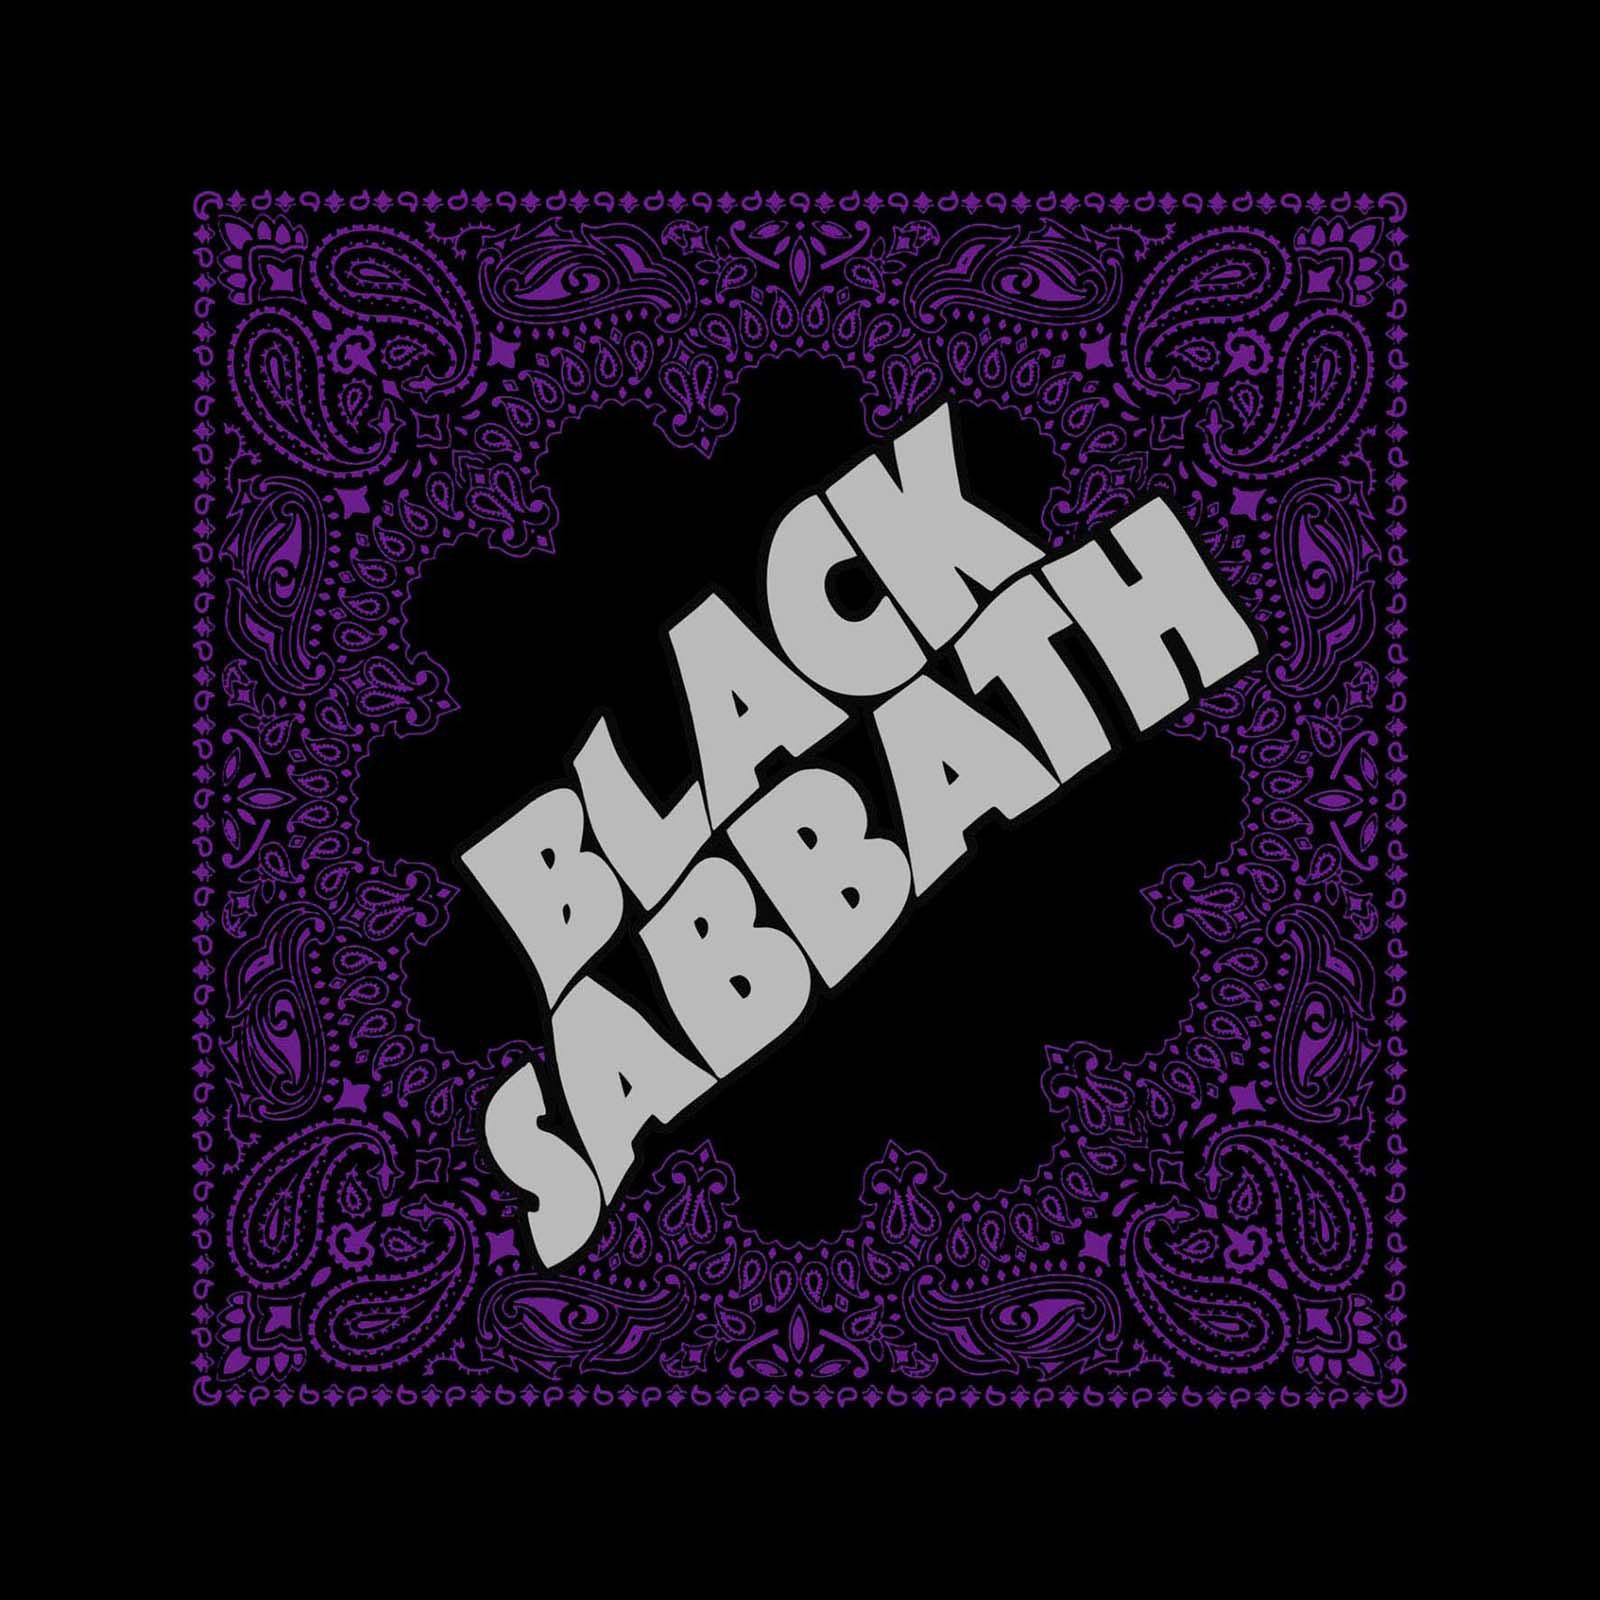 (ブラック・サバス) Black Sabbath オフィシャル商品 ユニセックス ロゴ バンダナ スカーフ ハンカチ 【海外通販】